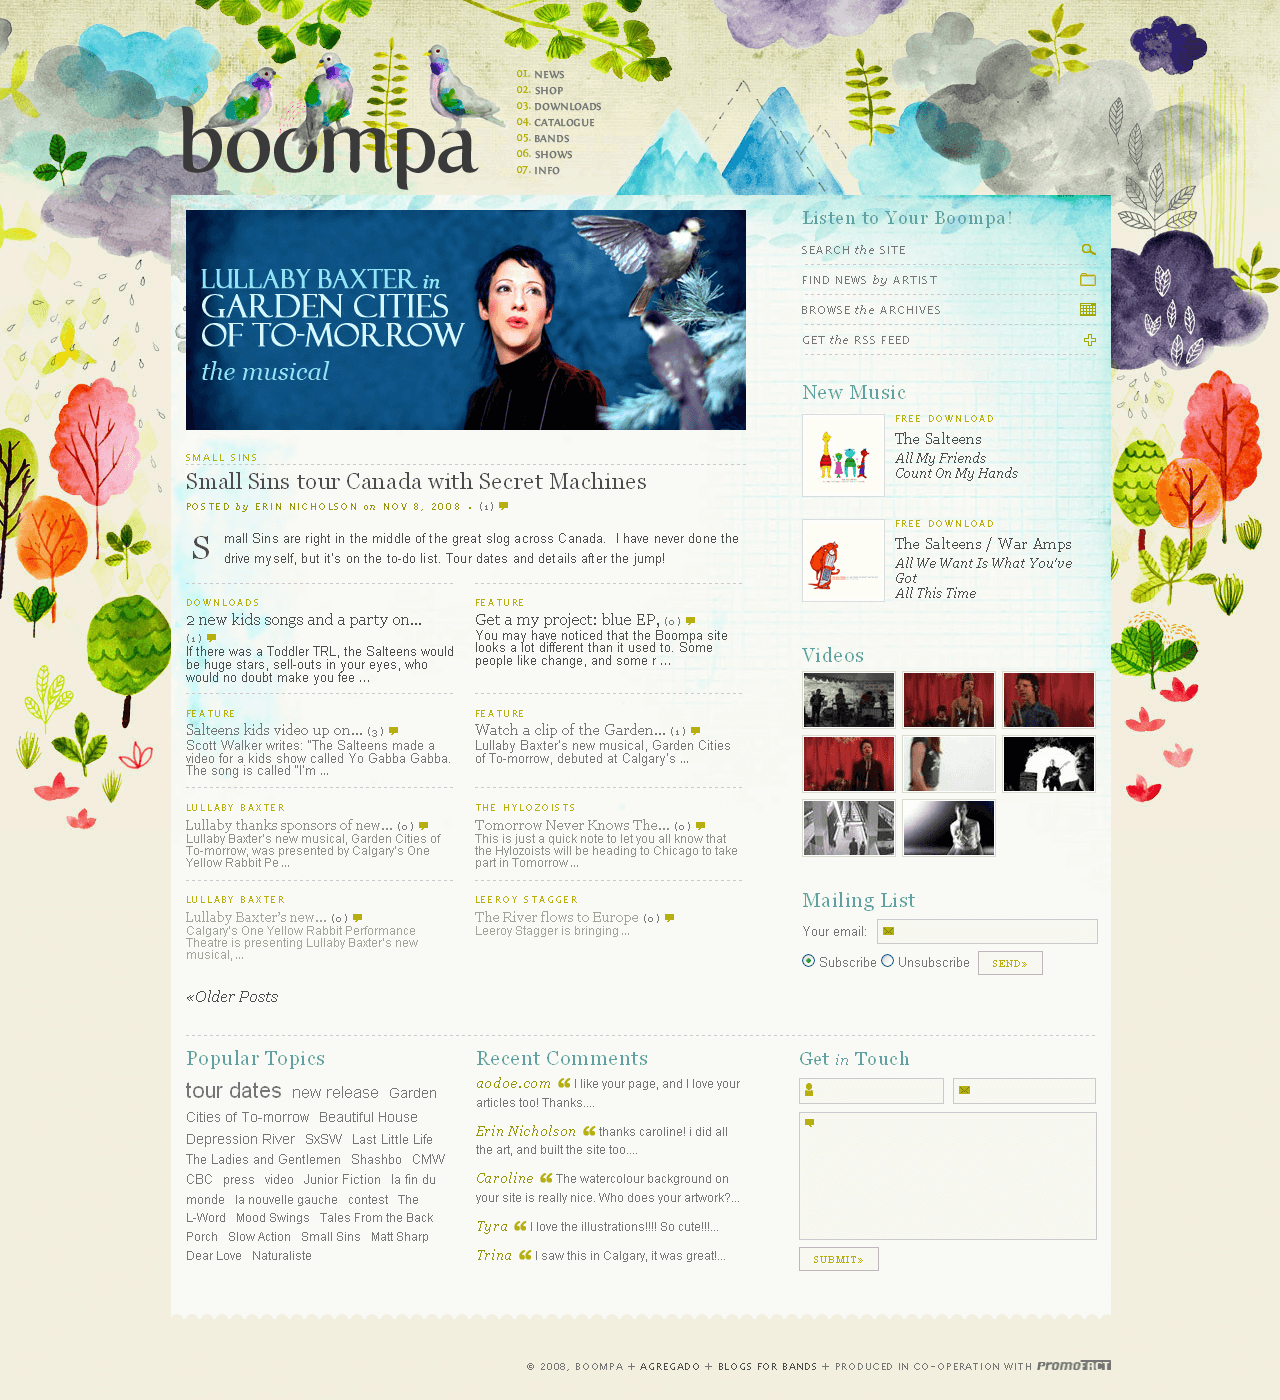 Boompa website in 2008